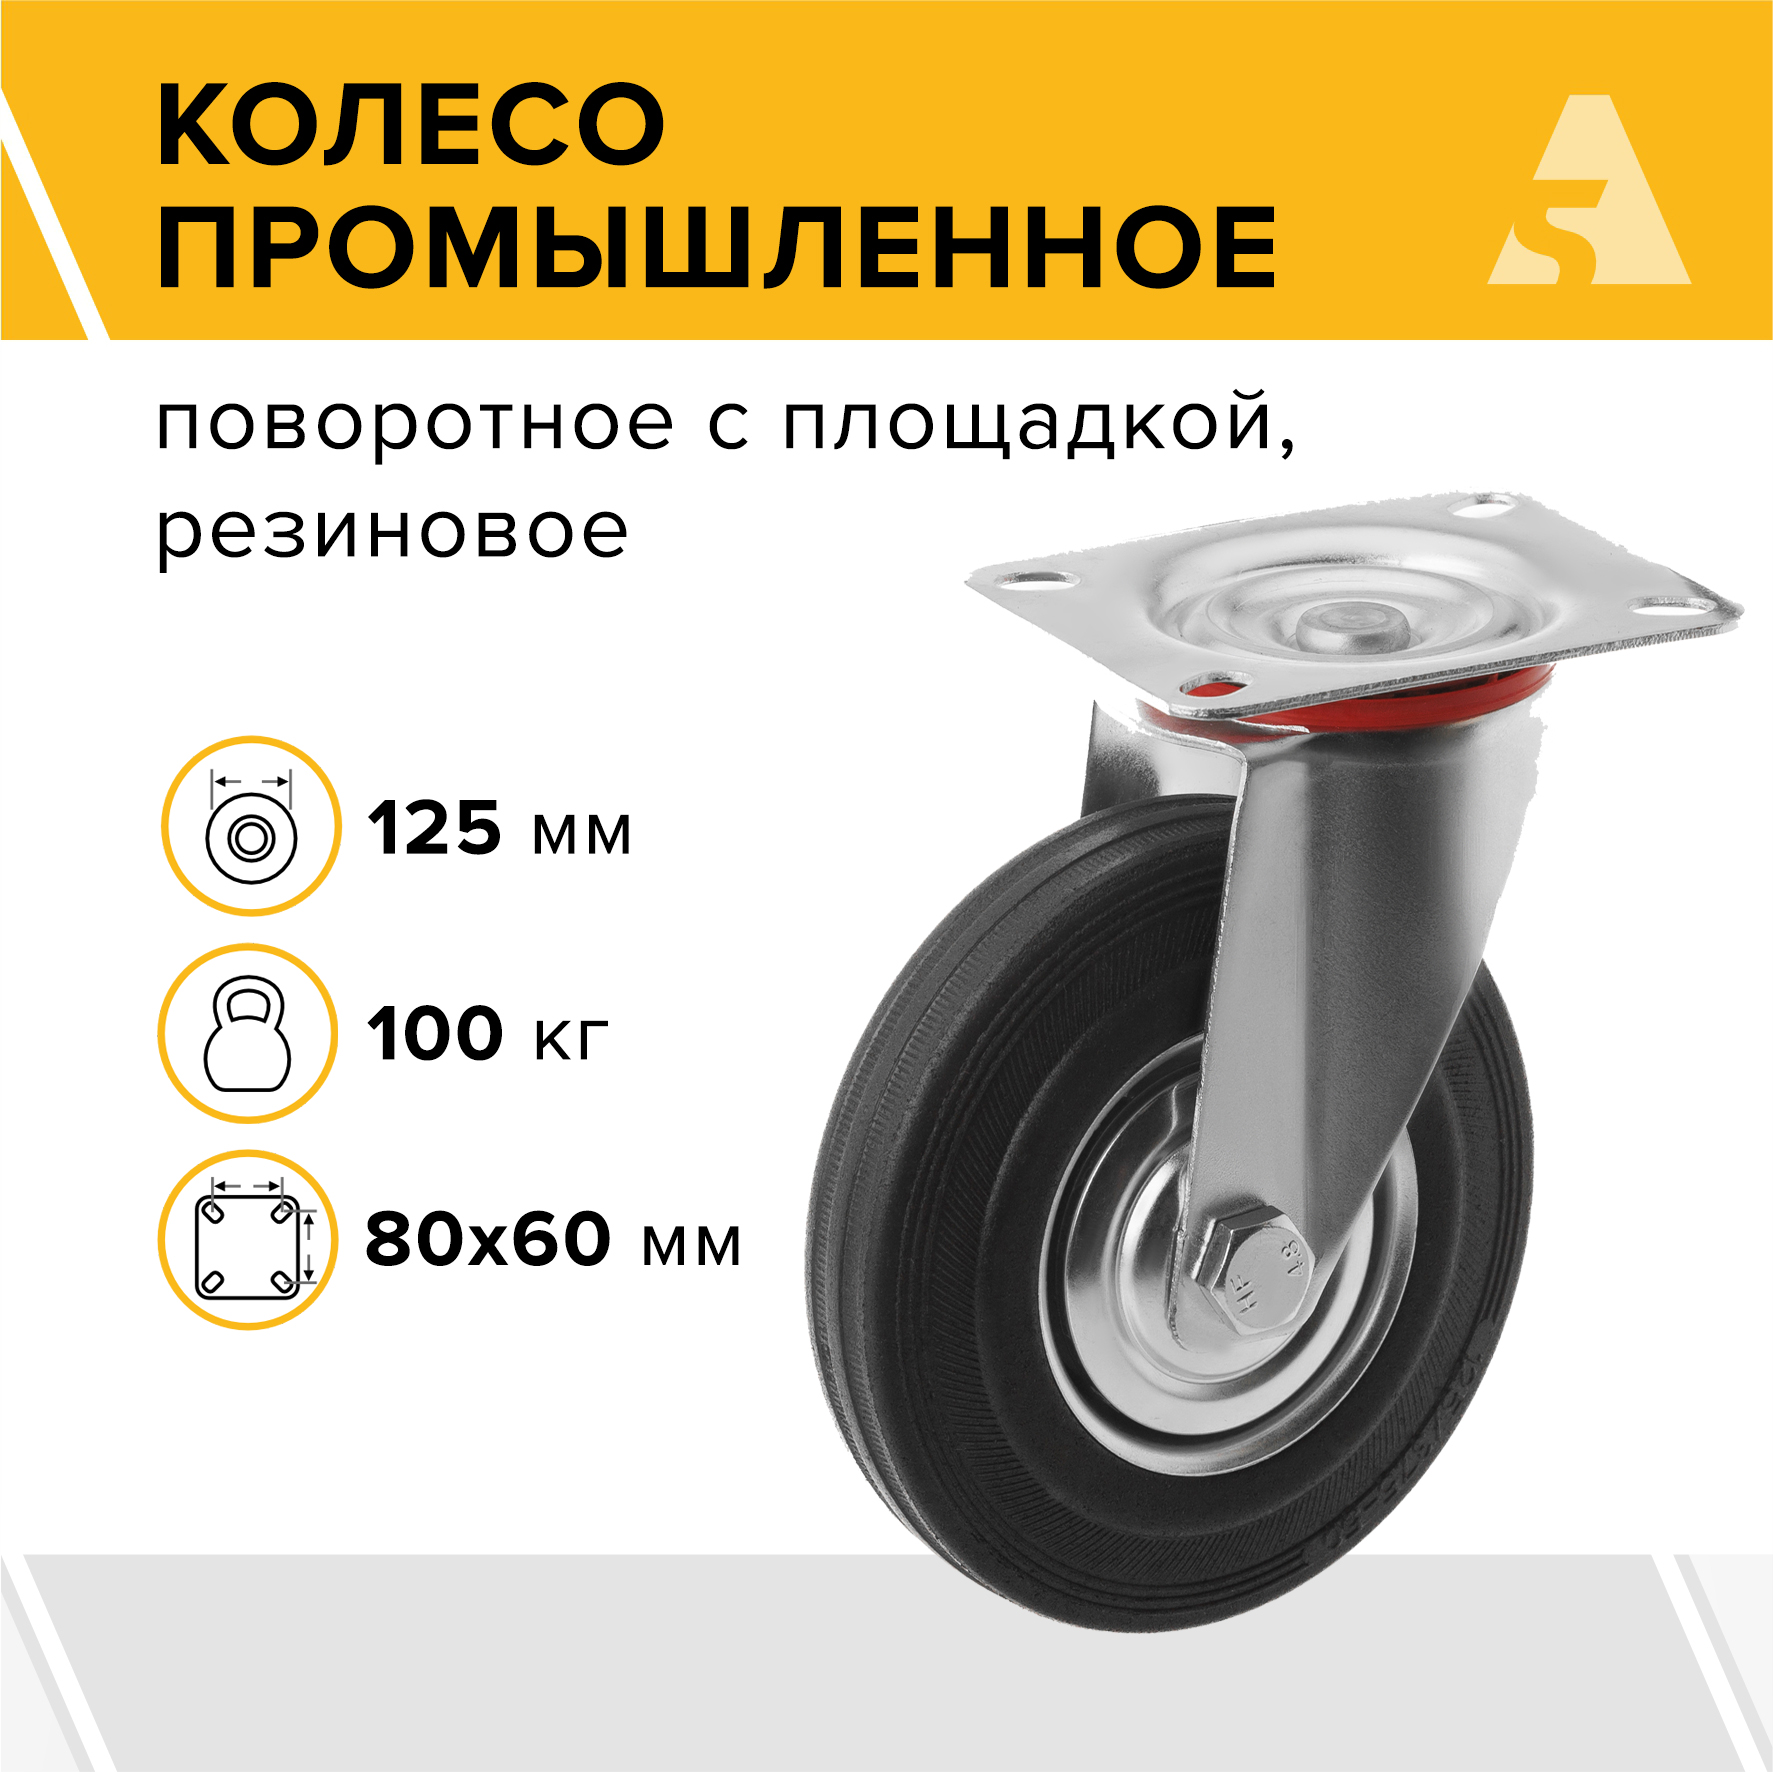 промышленное поворотное колесо а5 Колесо промышленное А5 SC 55 1000009